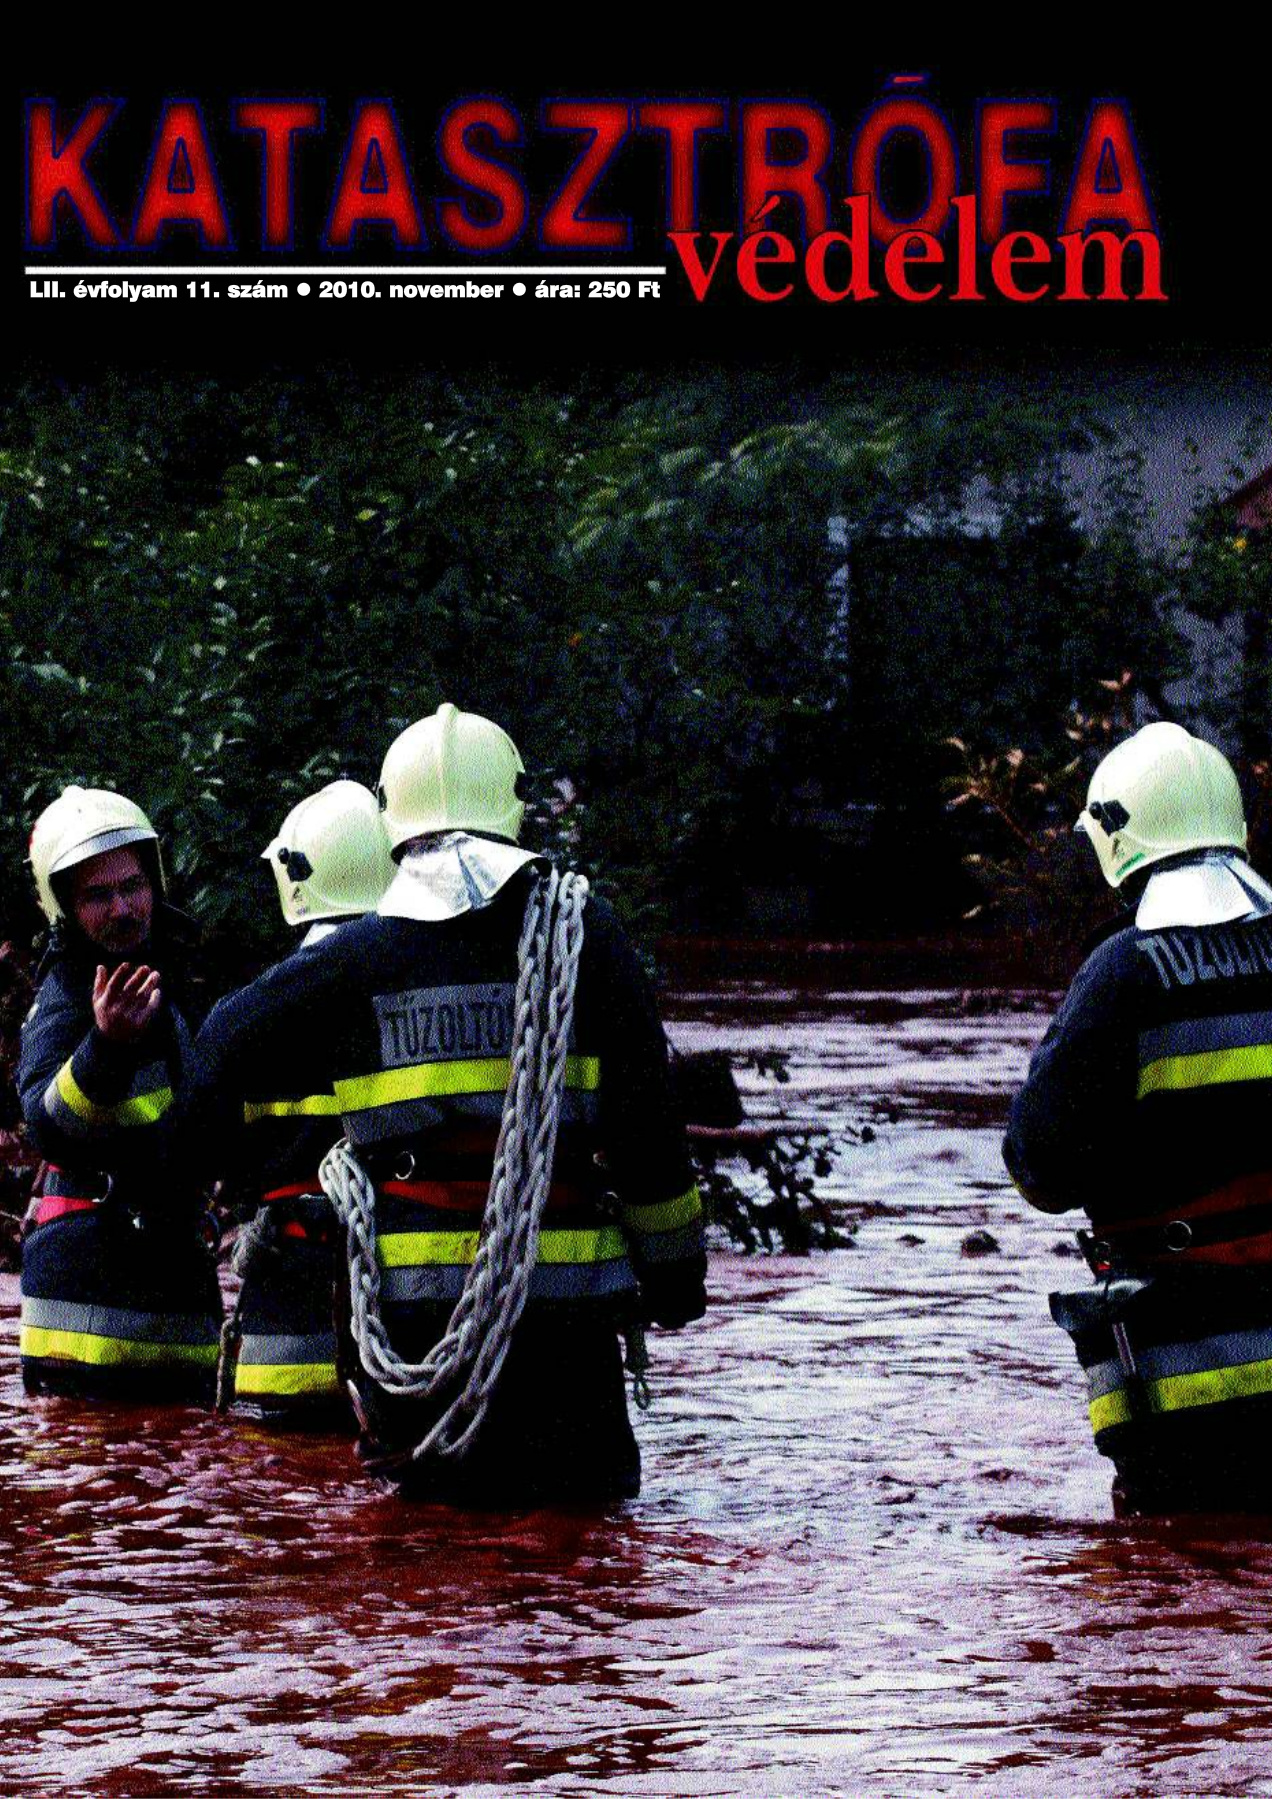 A Katasztrófavédelem magazin LII. évfolyam 11. szám megtekintése